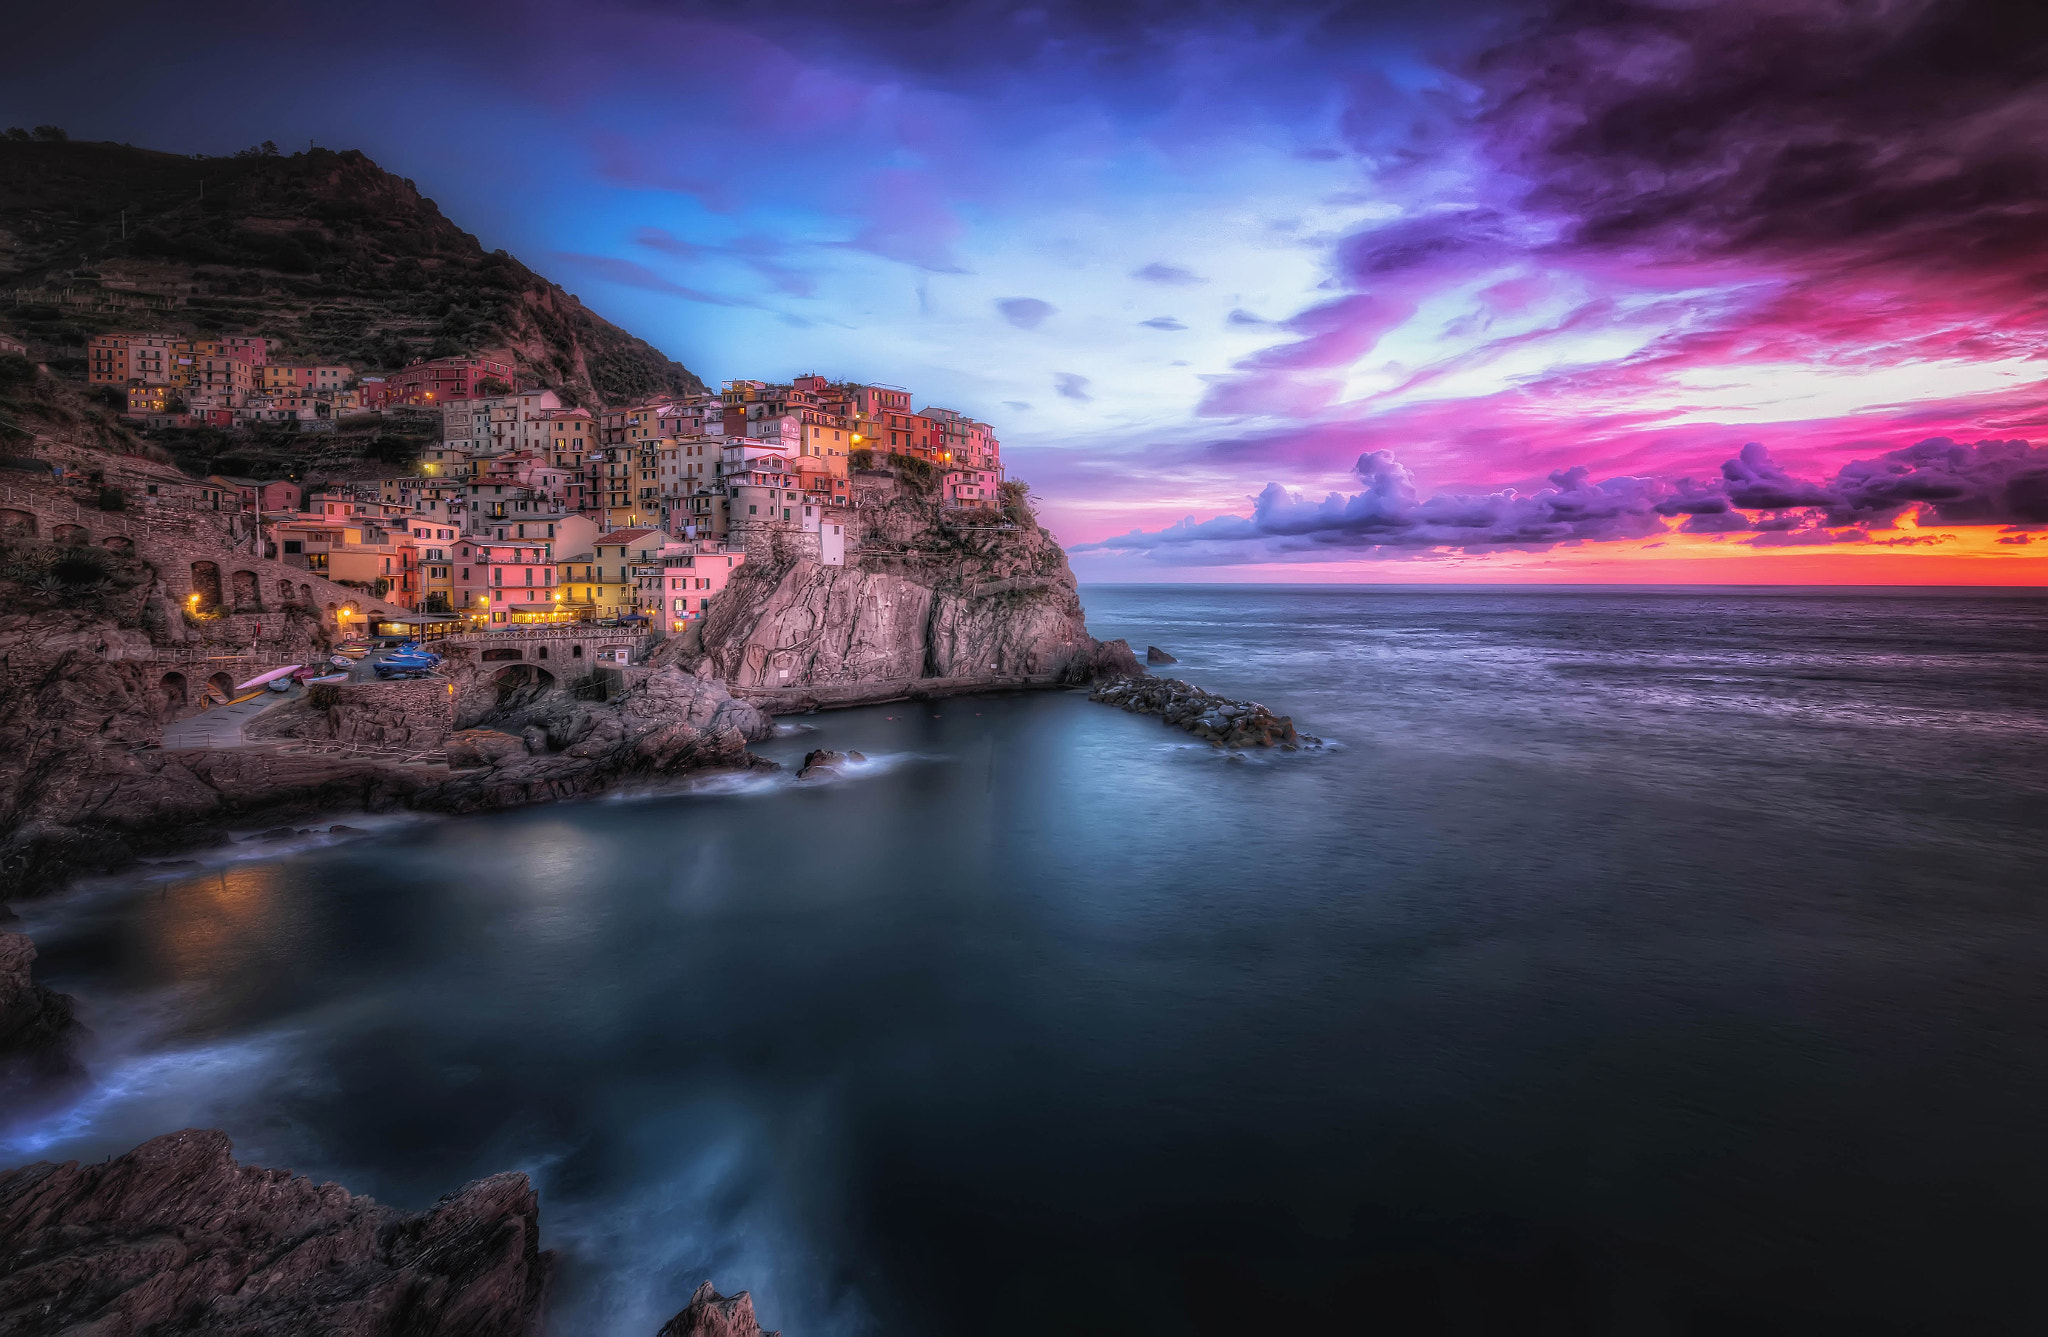 Обои Cinque Terre закат Italy на рабочий стол